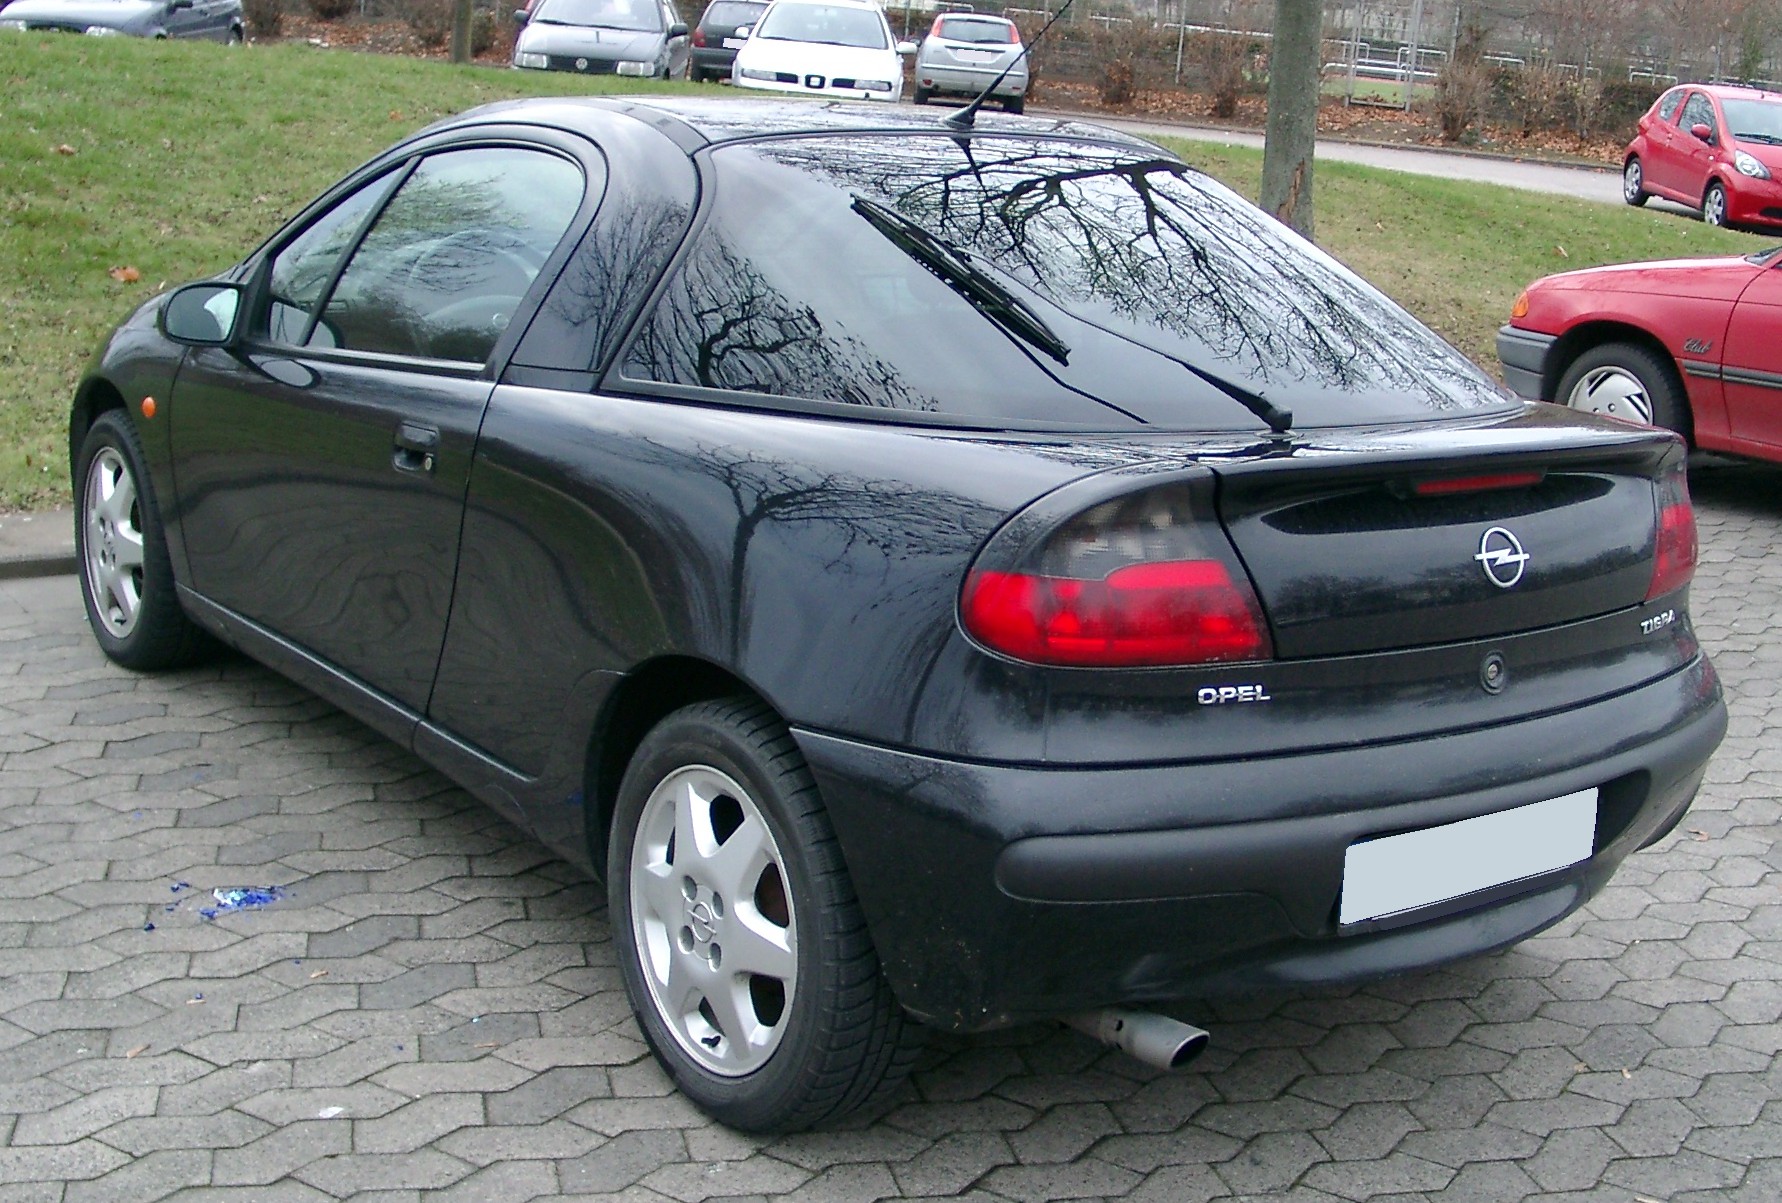 File:Opel Tigra rear 20071212.jpg